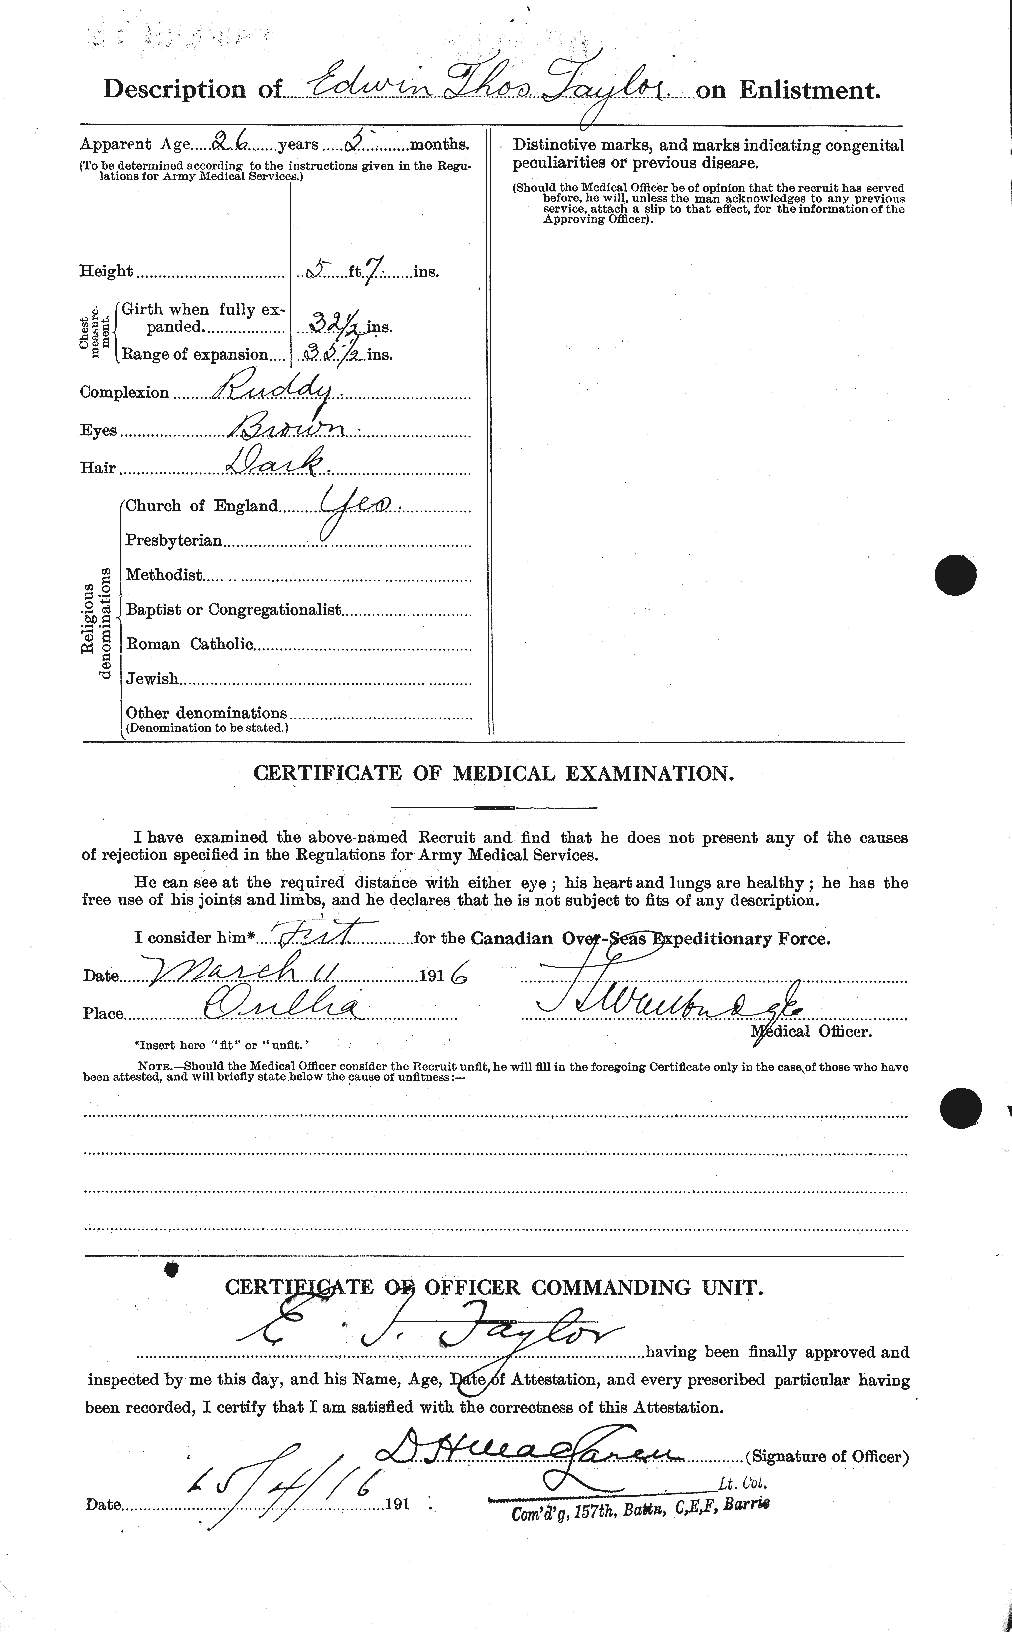 Dossiers du Personnel de la Première Guerre mondiale - CEC 627344b